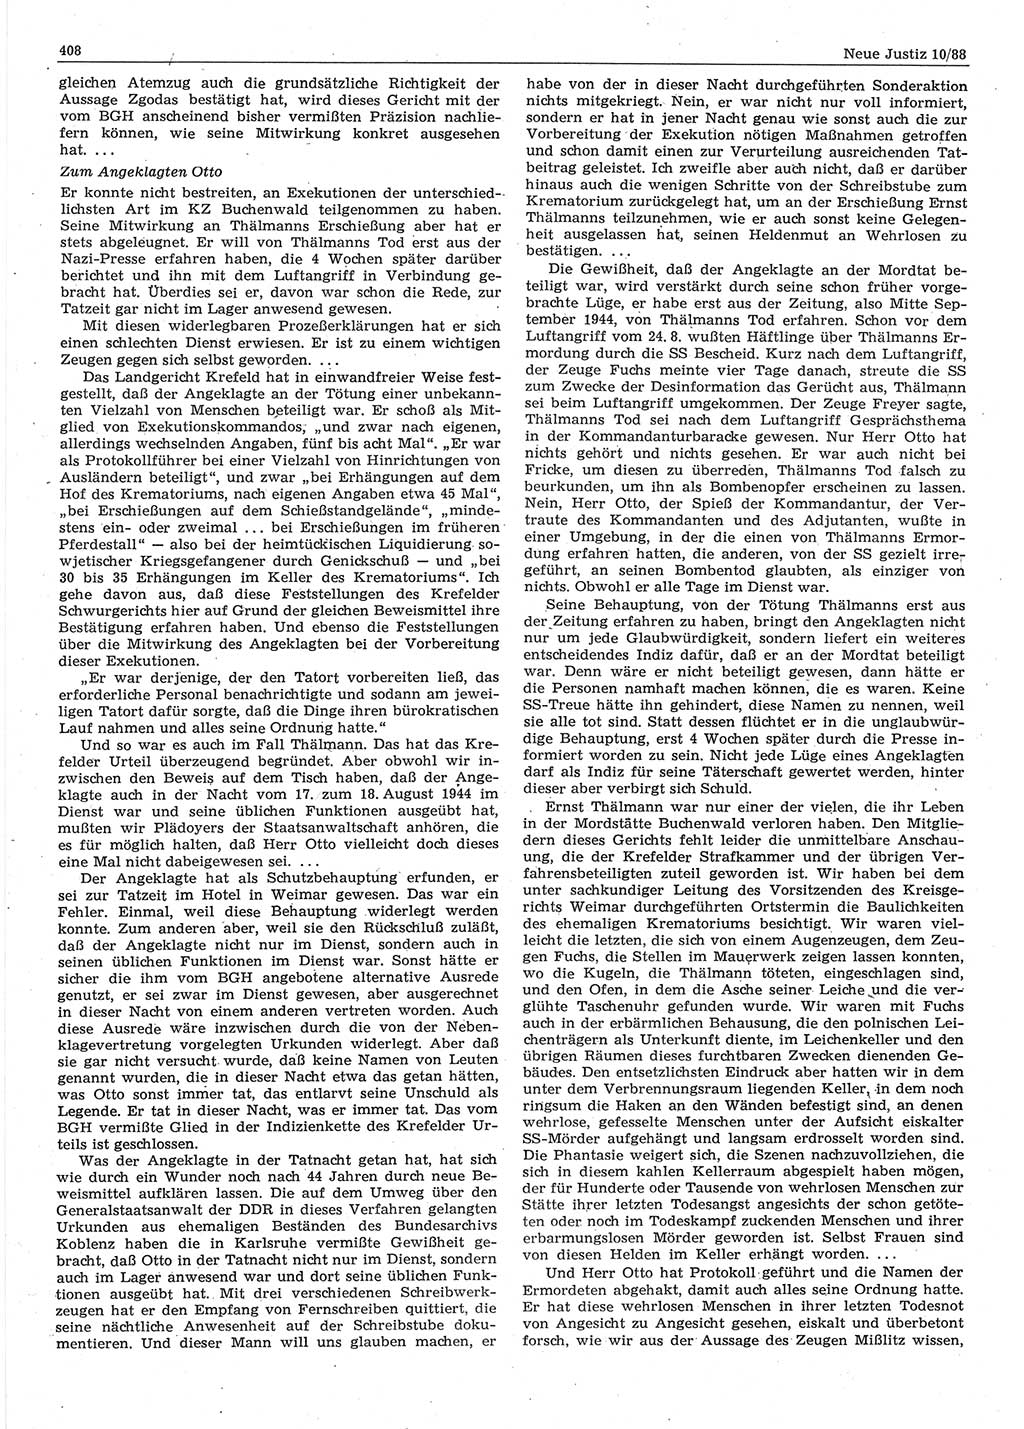 Neue Justiz (NJ), Zeitschrift für sozialistisches Recht und Gesetzlichkeit [Deutsche Demokratische Republik (DDR)], 42. Jahrgang 1988, Seite 408 (NJ DDR 1988, S. 408)